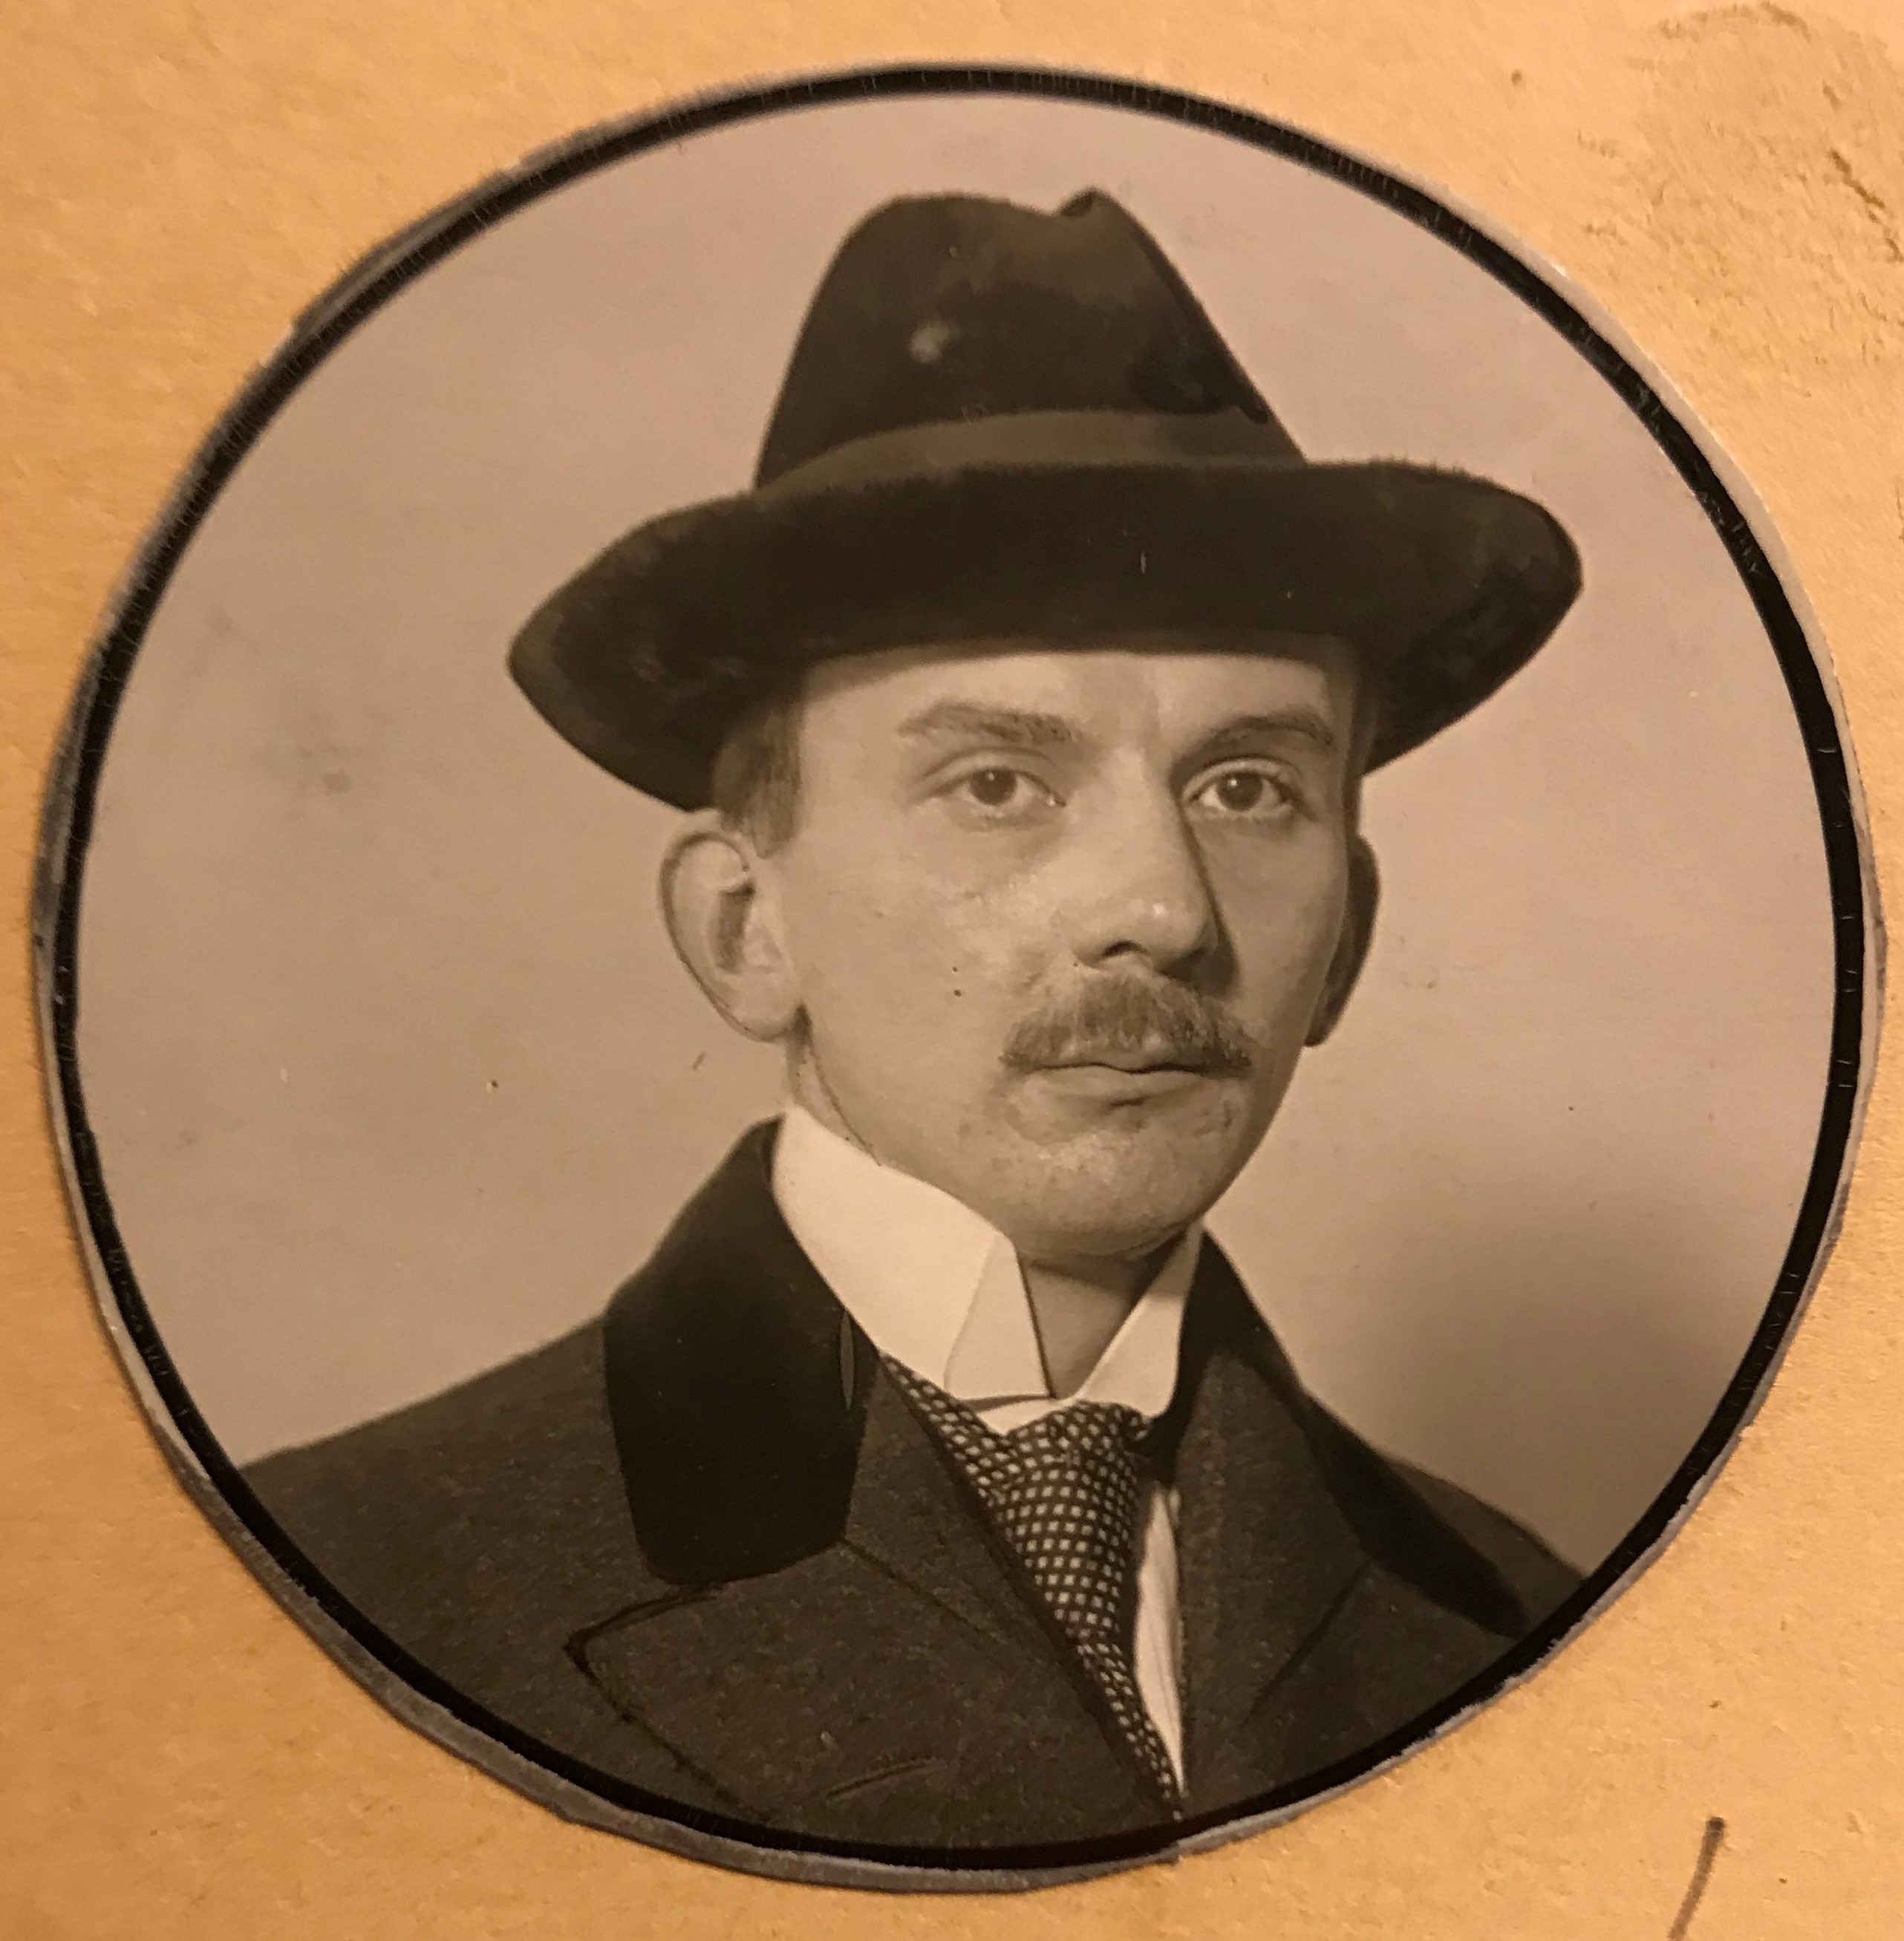 Cirkelformat fotografi av en ung man iförd hatt och mustasch.